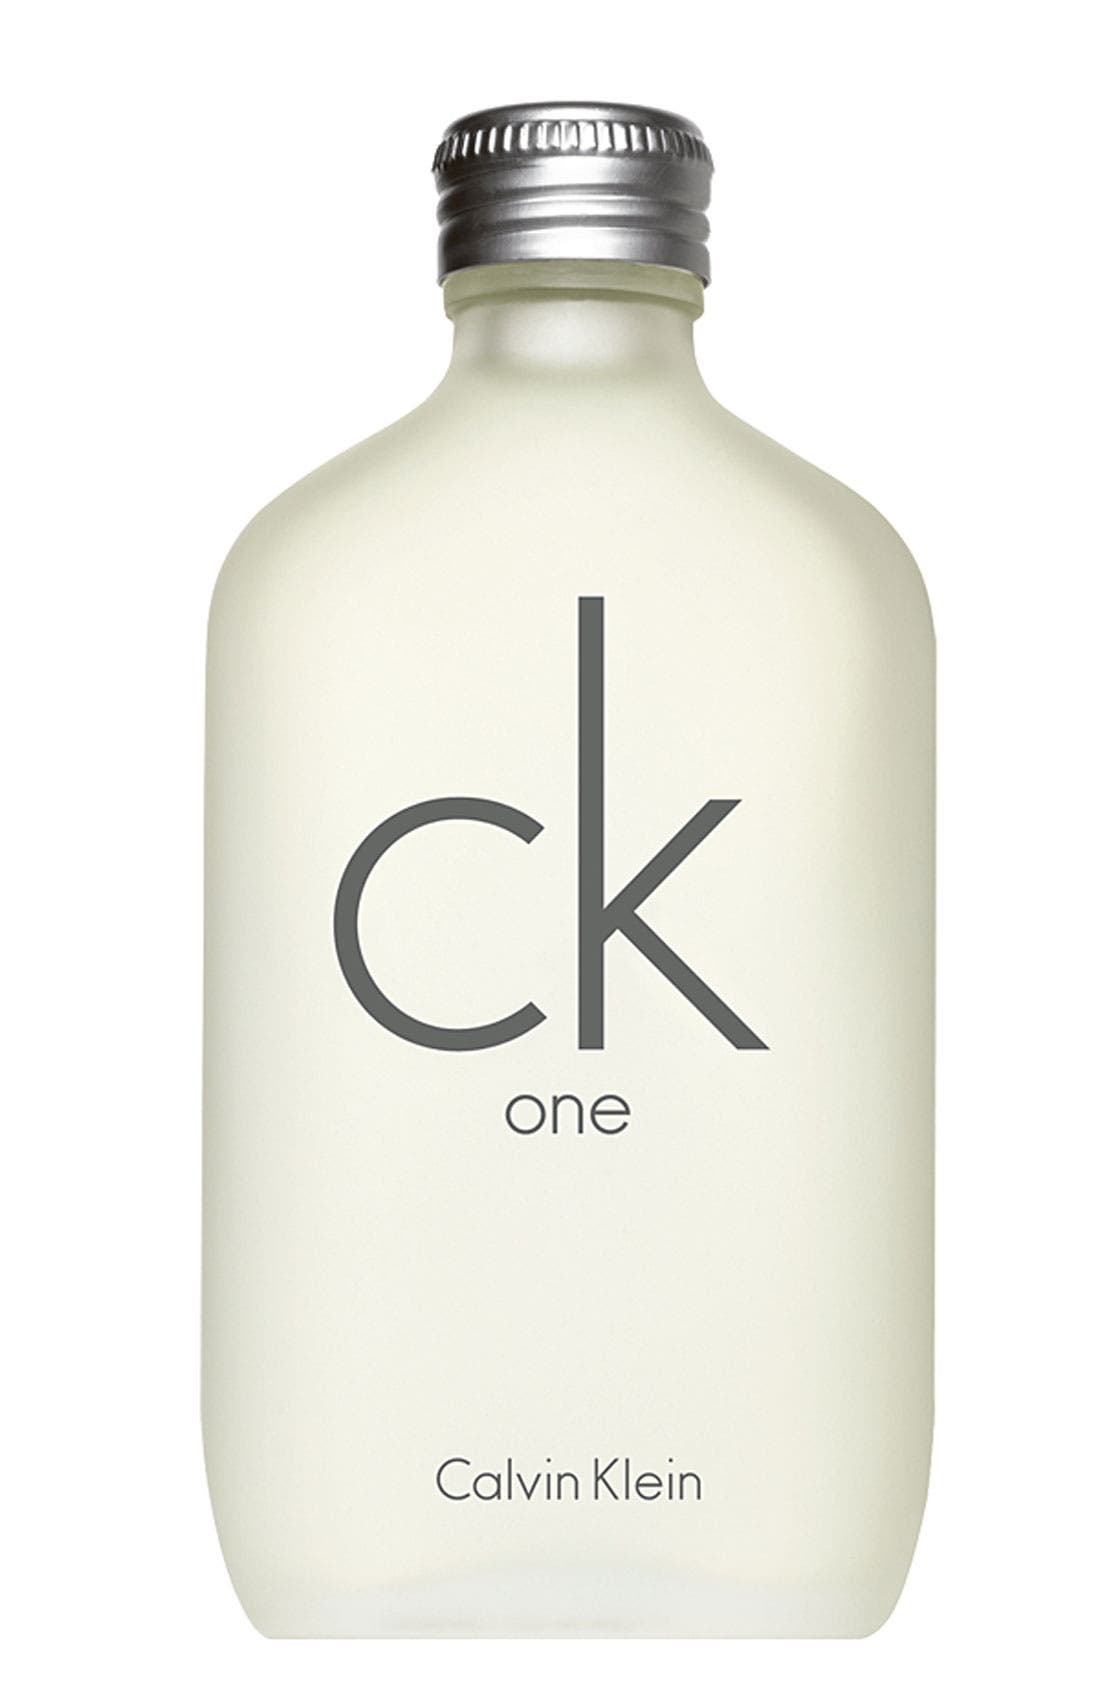 UPC 088300107407 product image for Ck One By Calvin Klein Eau De Toilette, Size - 3.4 oz | upcitemdb.com